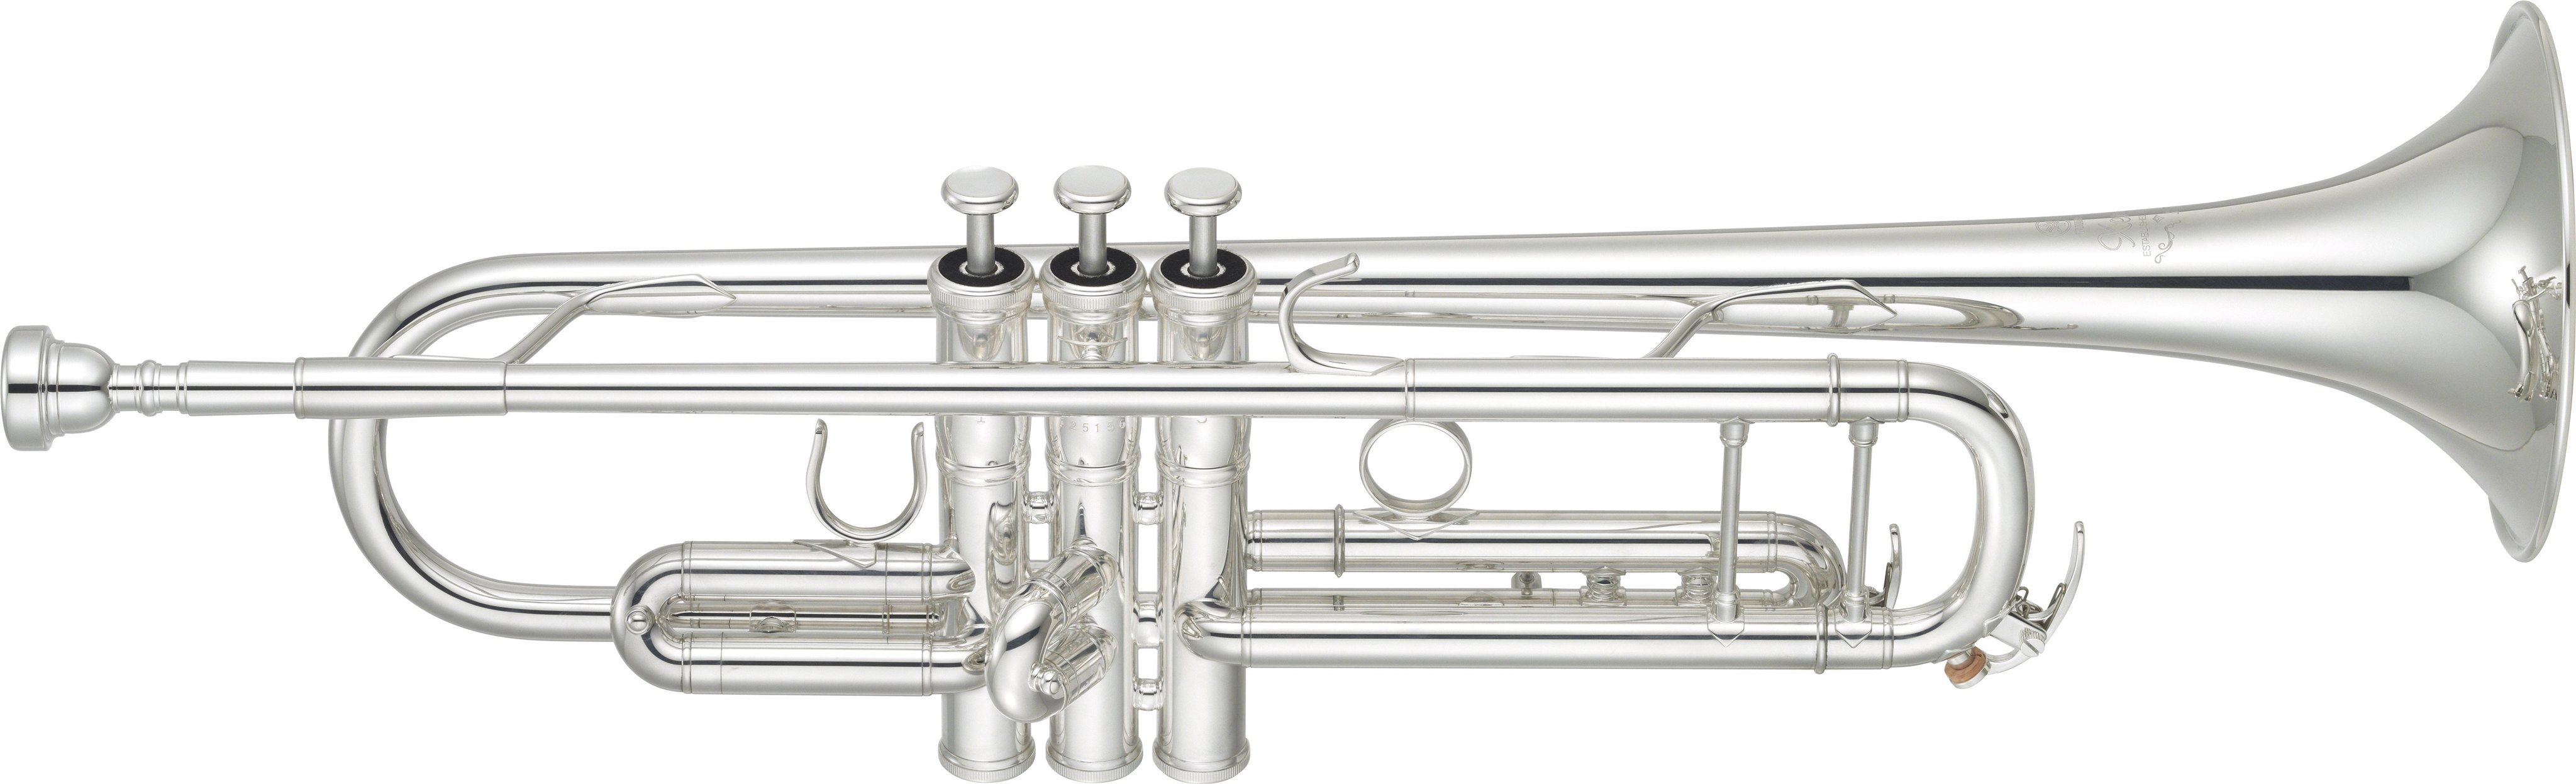 บีแฟลตทรัมเปตยี่ห้อยามาฮ่ารุ่น YTR-8335GS Yamaha Bb Trumpet